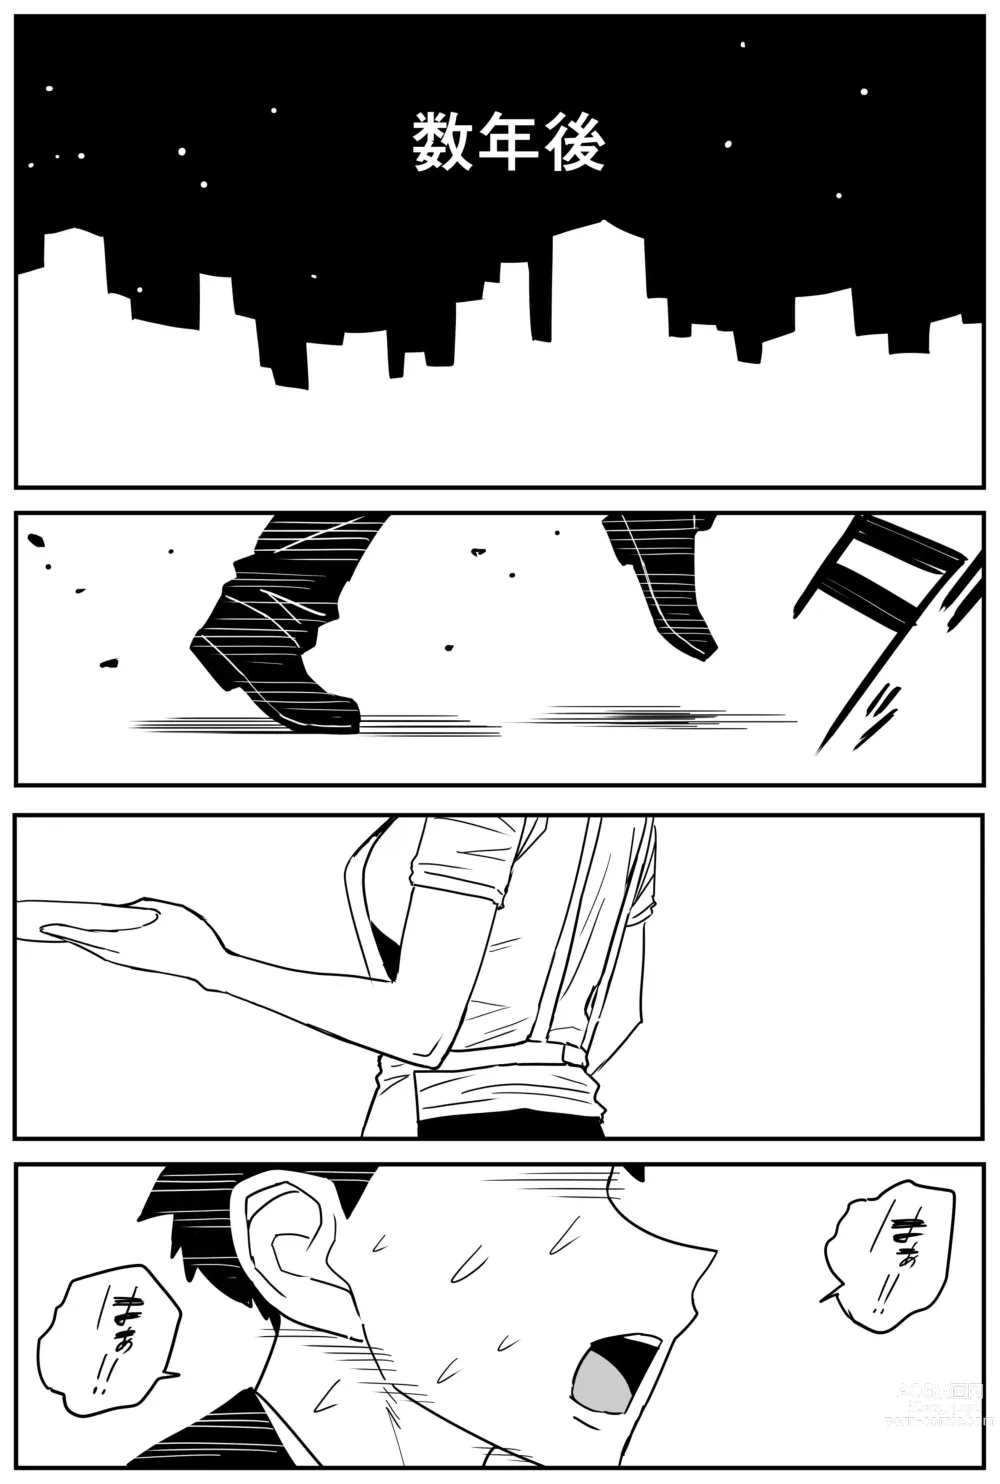 Page 344 of doujinshi Gal JK Ero Manga Ch.1-27